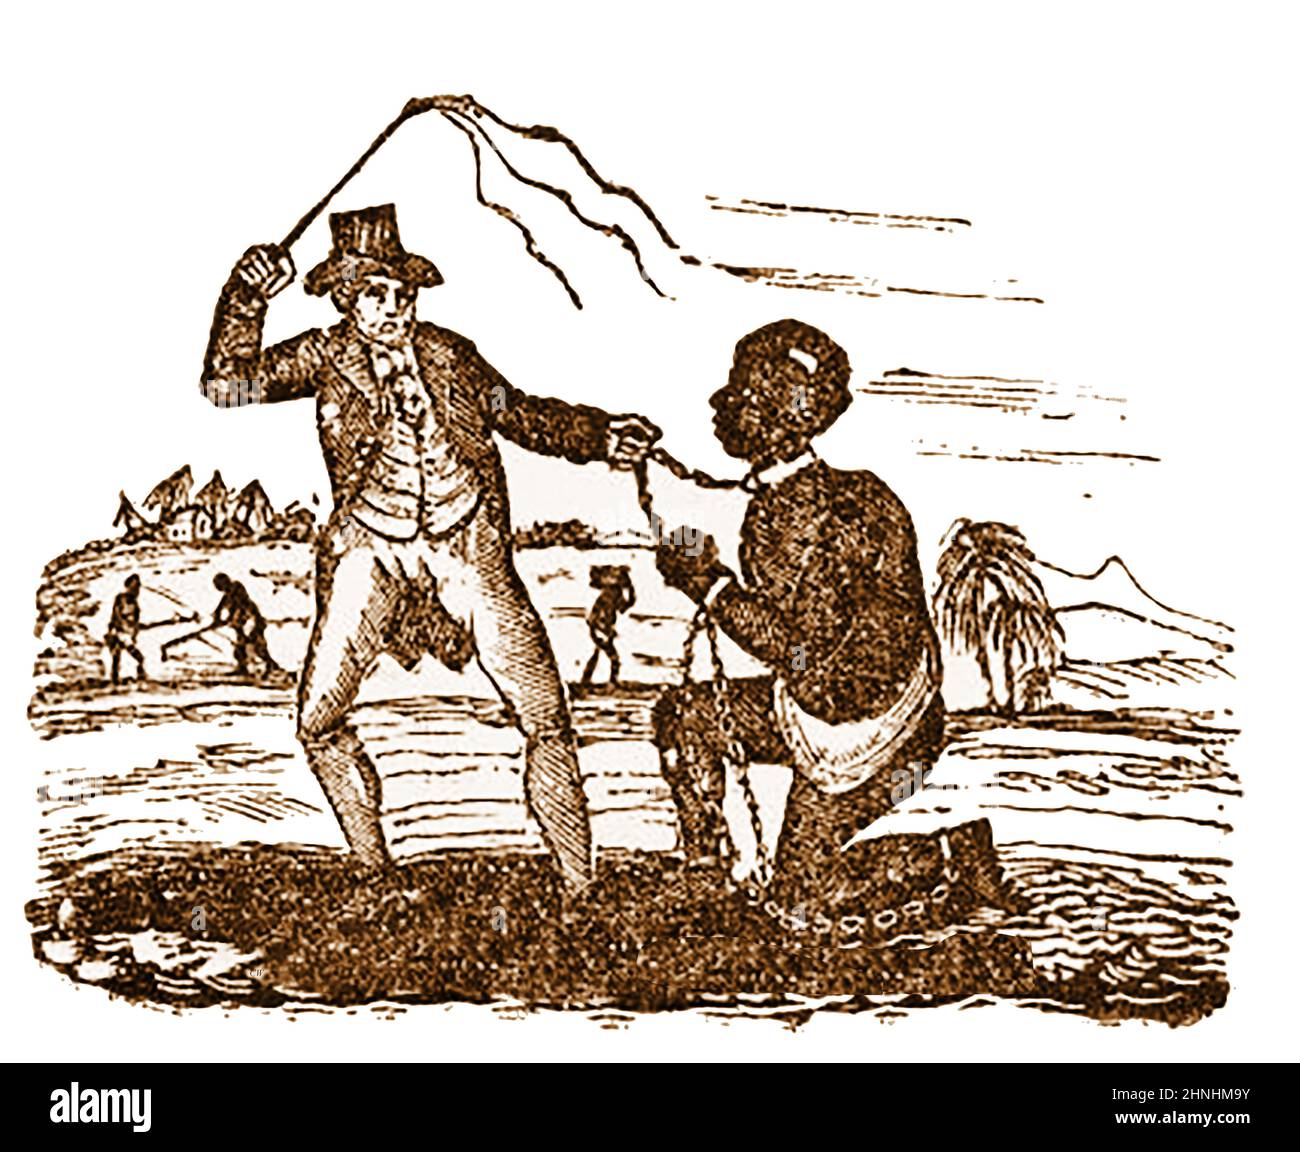 MOUVEMENT ANTIESCLAVAGISTE - gravure du début du 19th siècle illustrant le mauvais traitement des esclaves dans une plantation. Banque D'Images